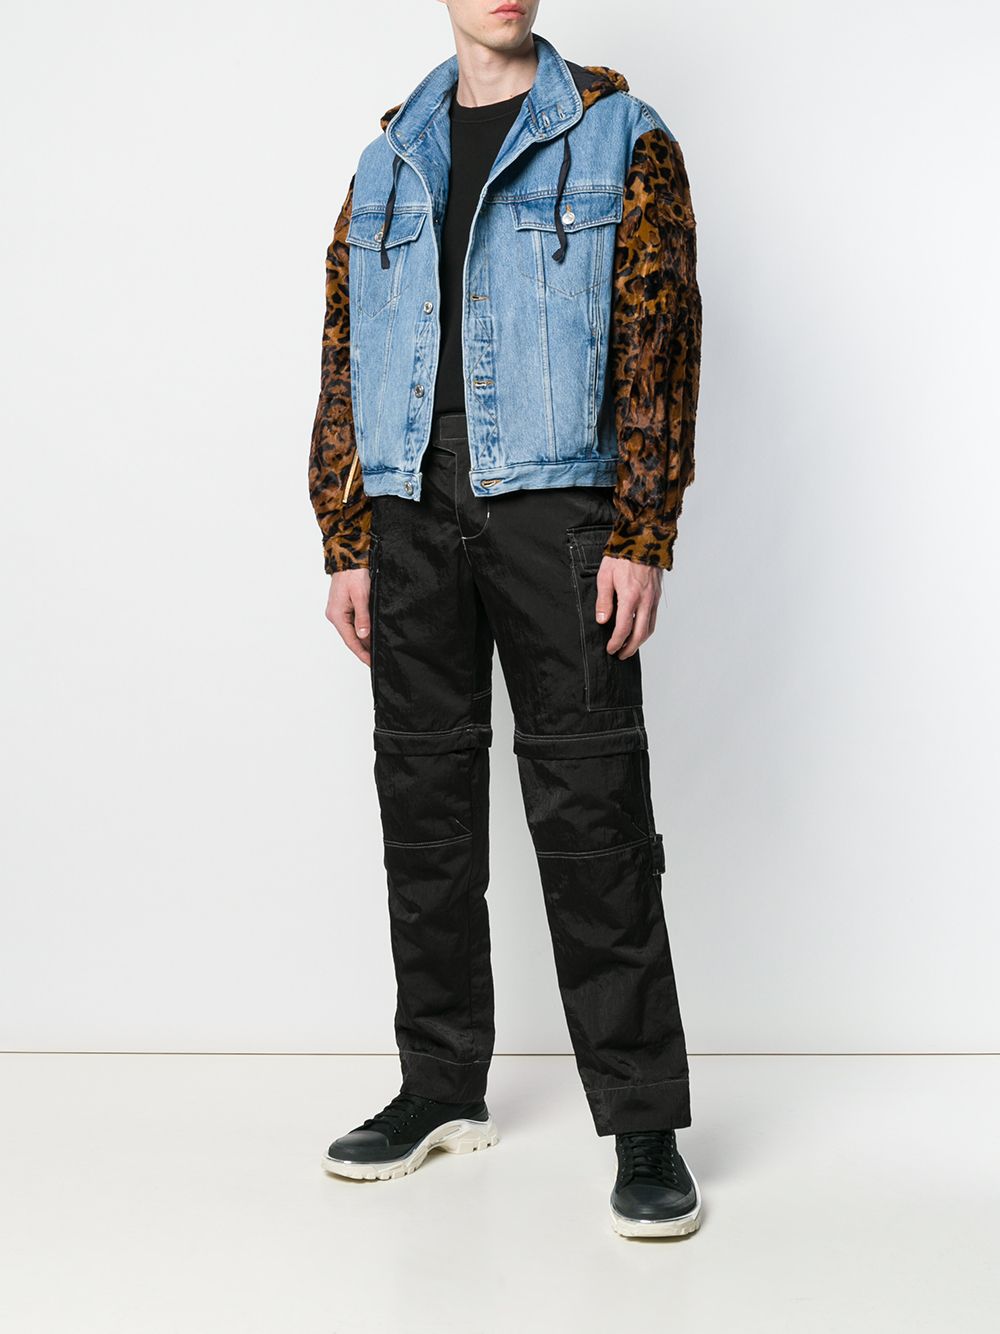 фото Martine rose джинсовая куртка с леопардовыми рукавами